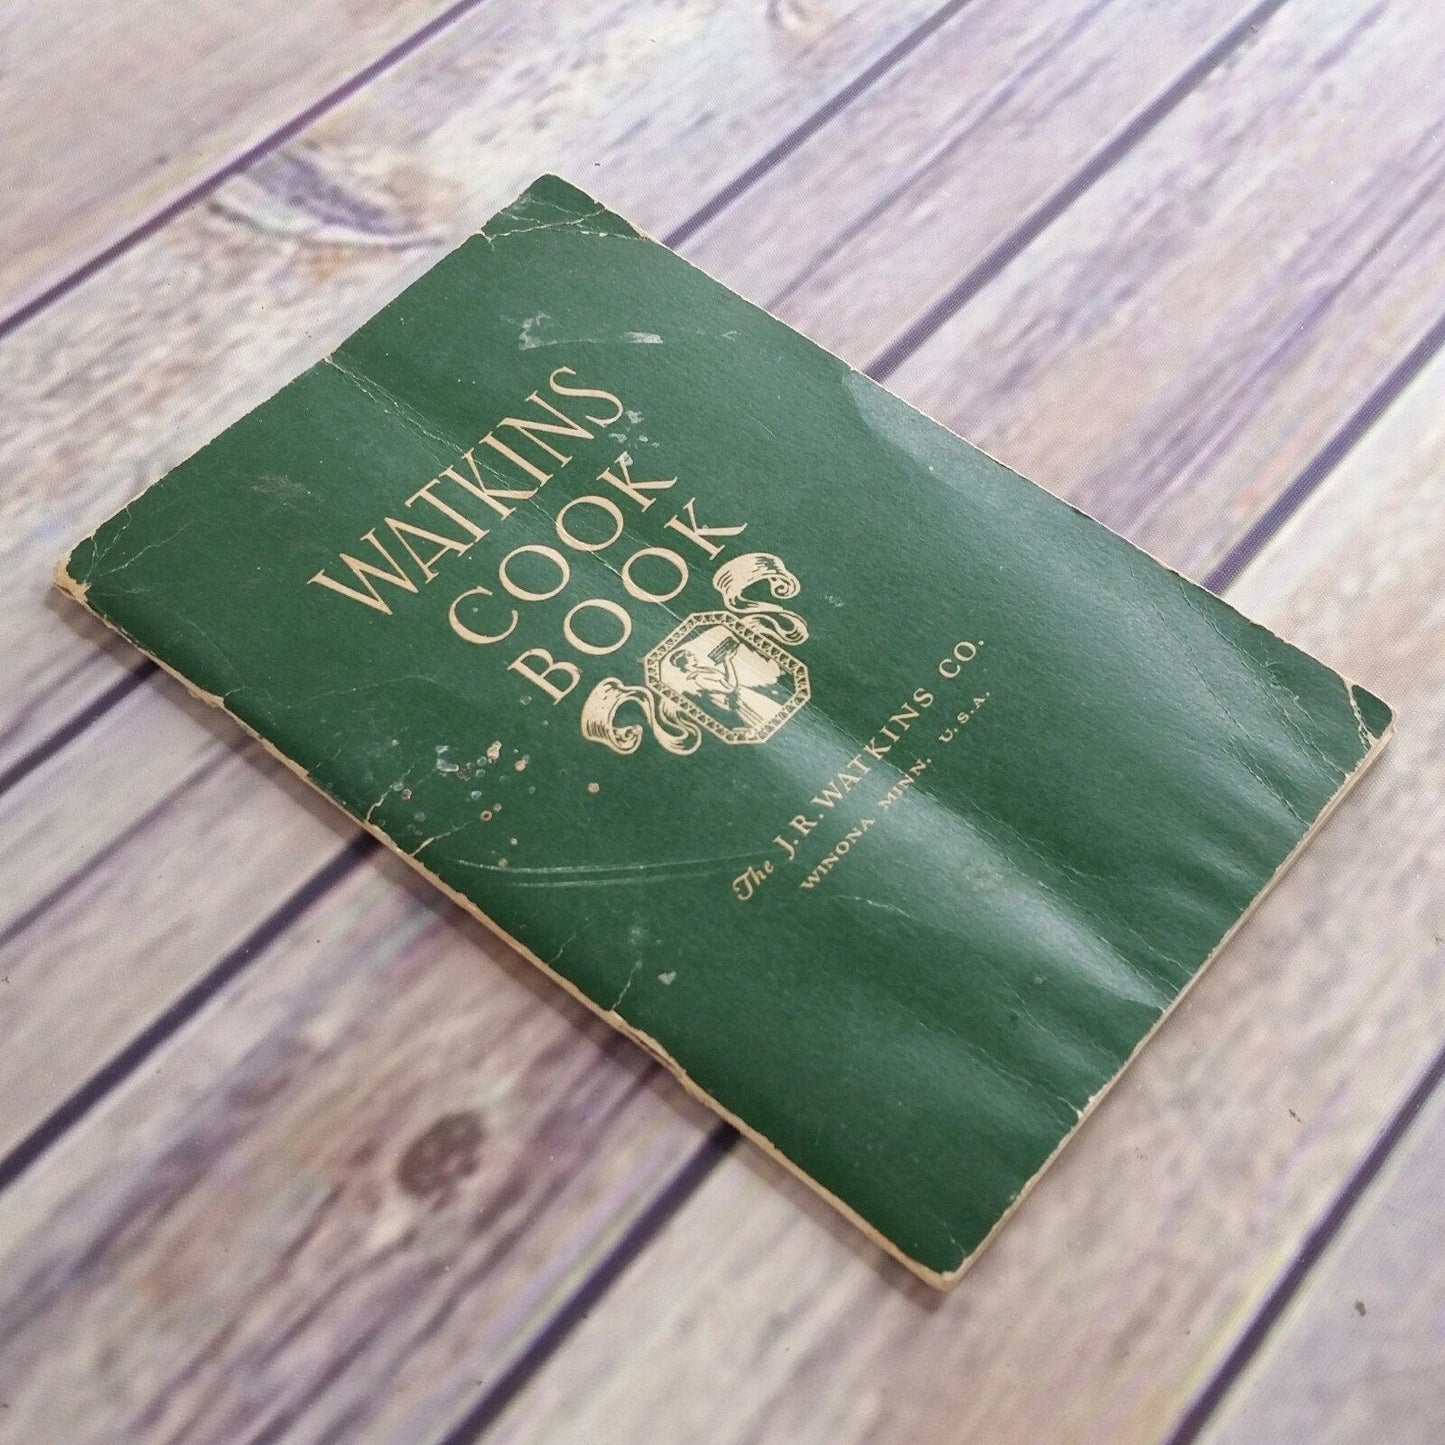 Vintage Watkins Cookbook JR Watkins Company 1934 Paperback Booklet Printed by Watkins Winona Minnesota Ads Advertising